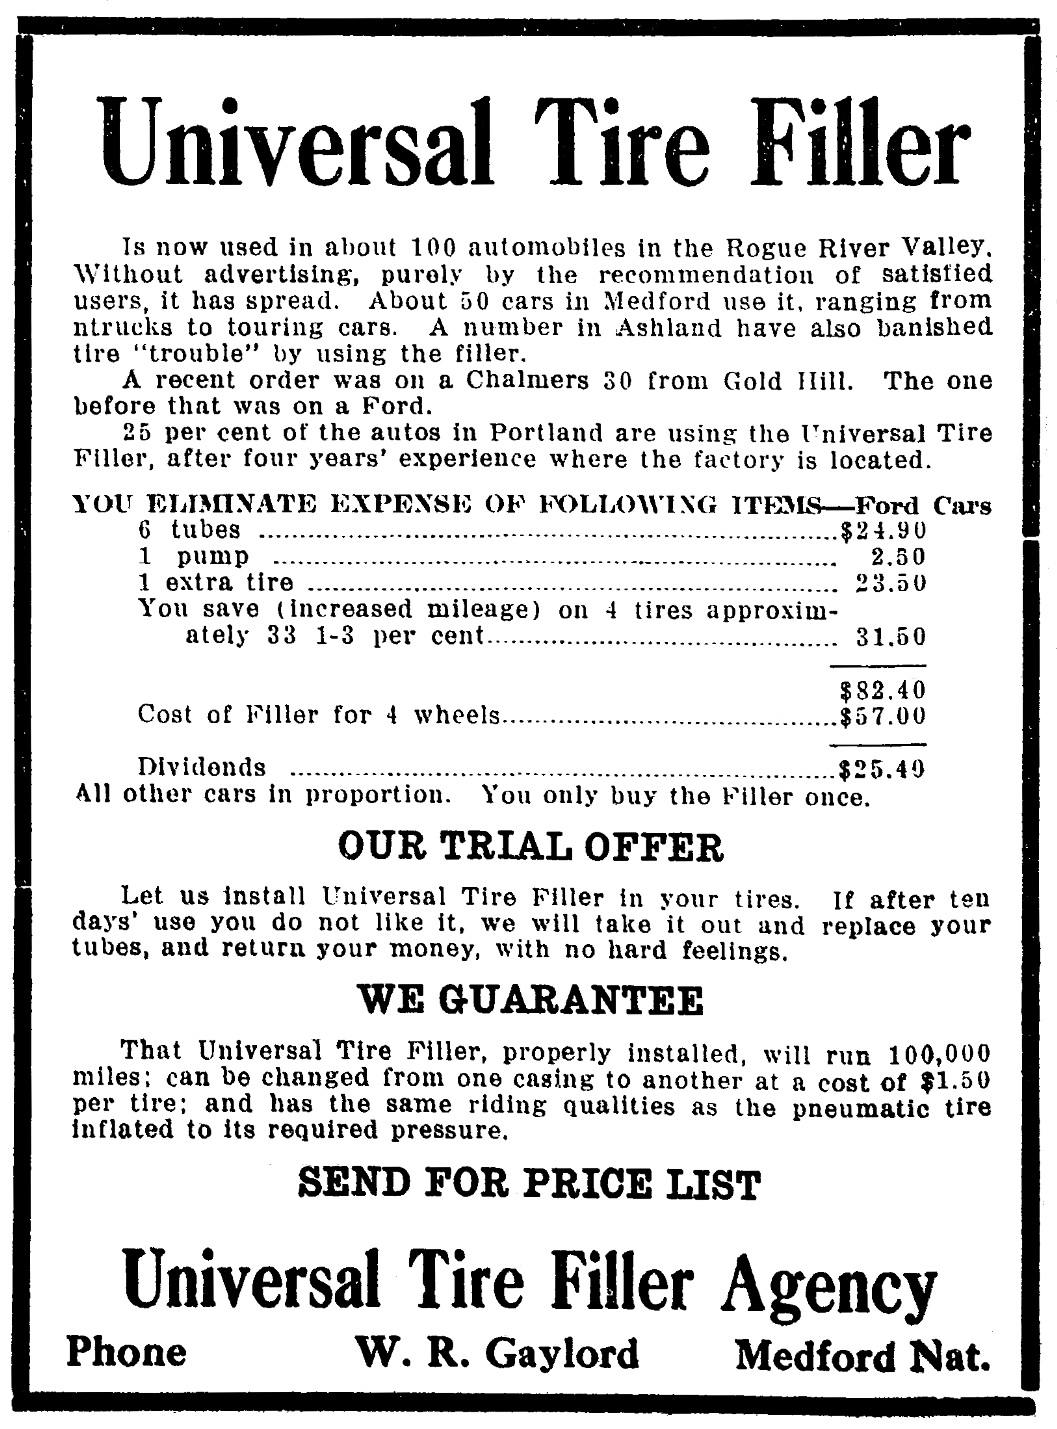 Gaylord ad, July 13, 1919 Medford Sun